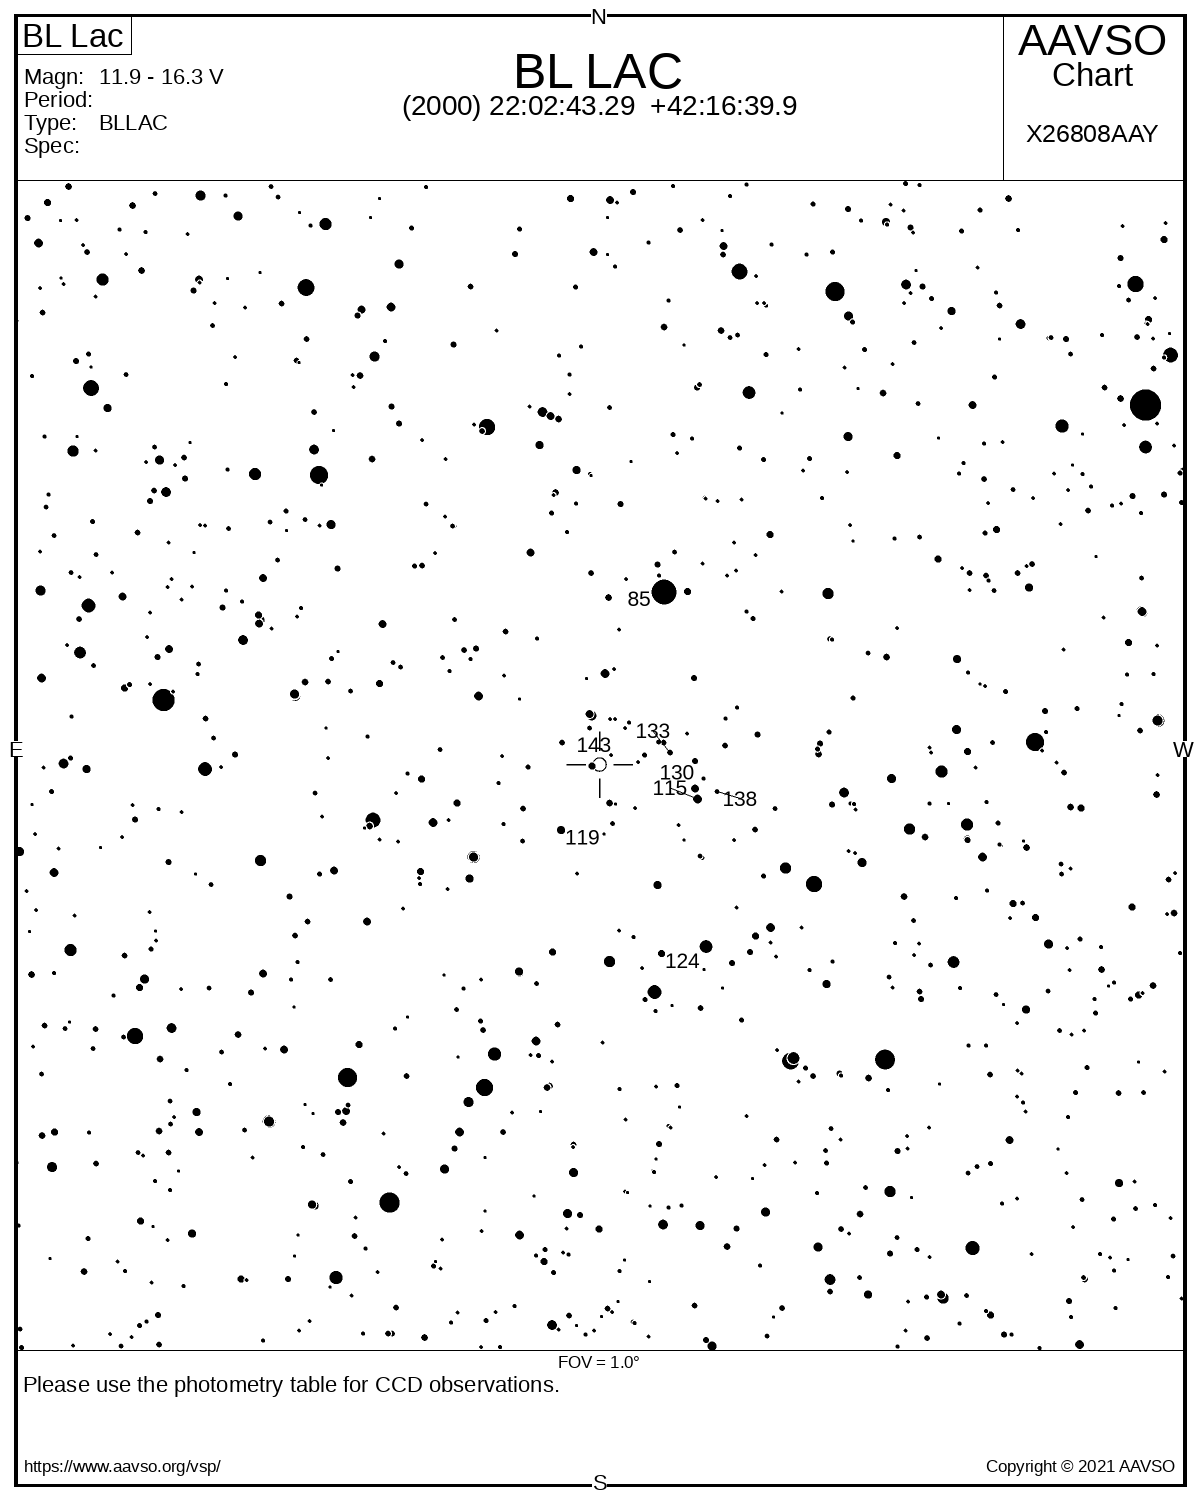 Eine Karte zeigt die Umgebung des Blazars BL Lac mit schwarzen Sternen auf weißem Hintergrund